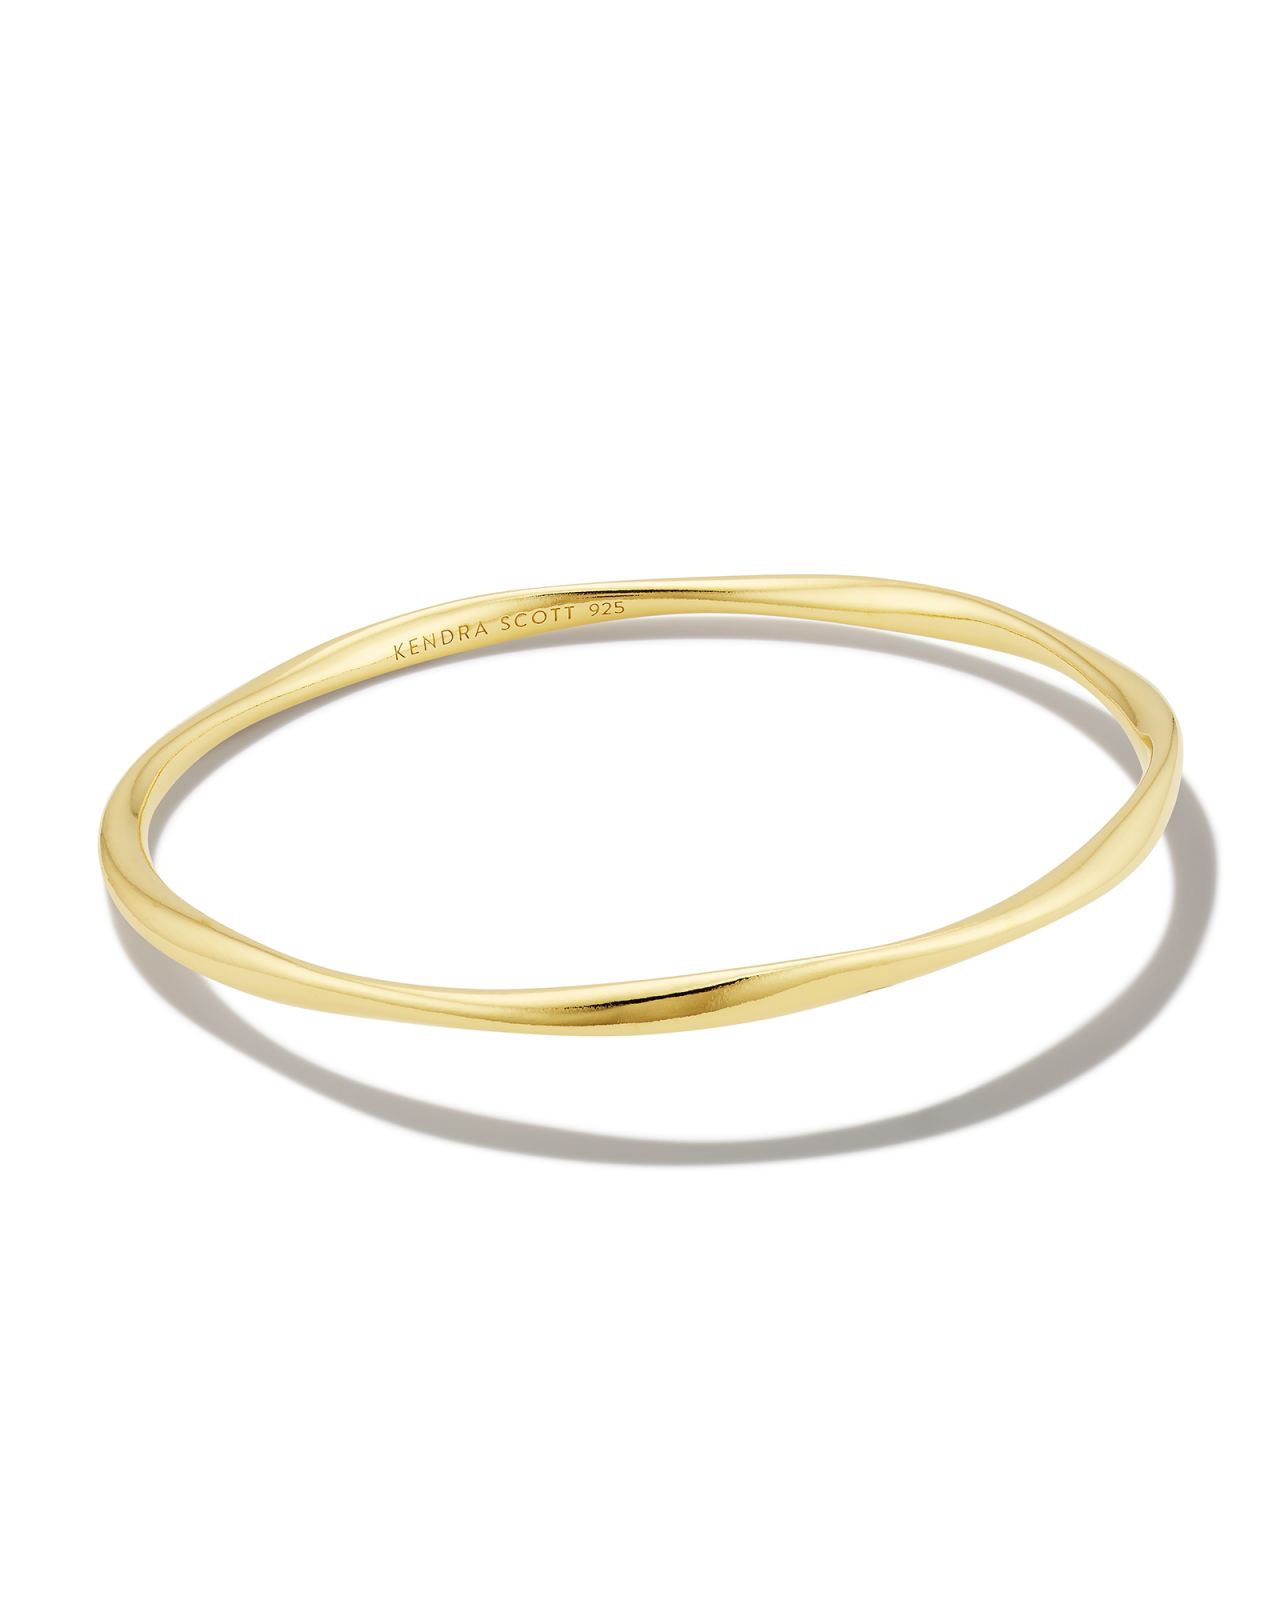 Aspen Bangle Bracelet in 18k Gold Vermeil image number 0